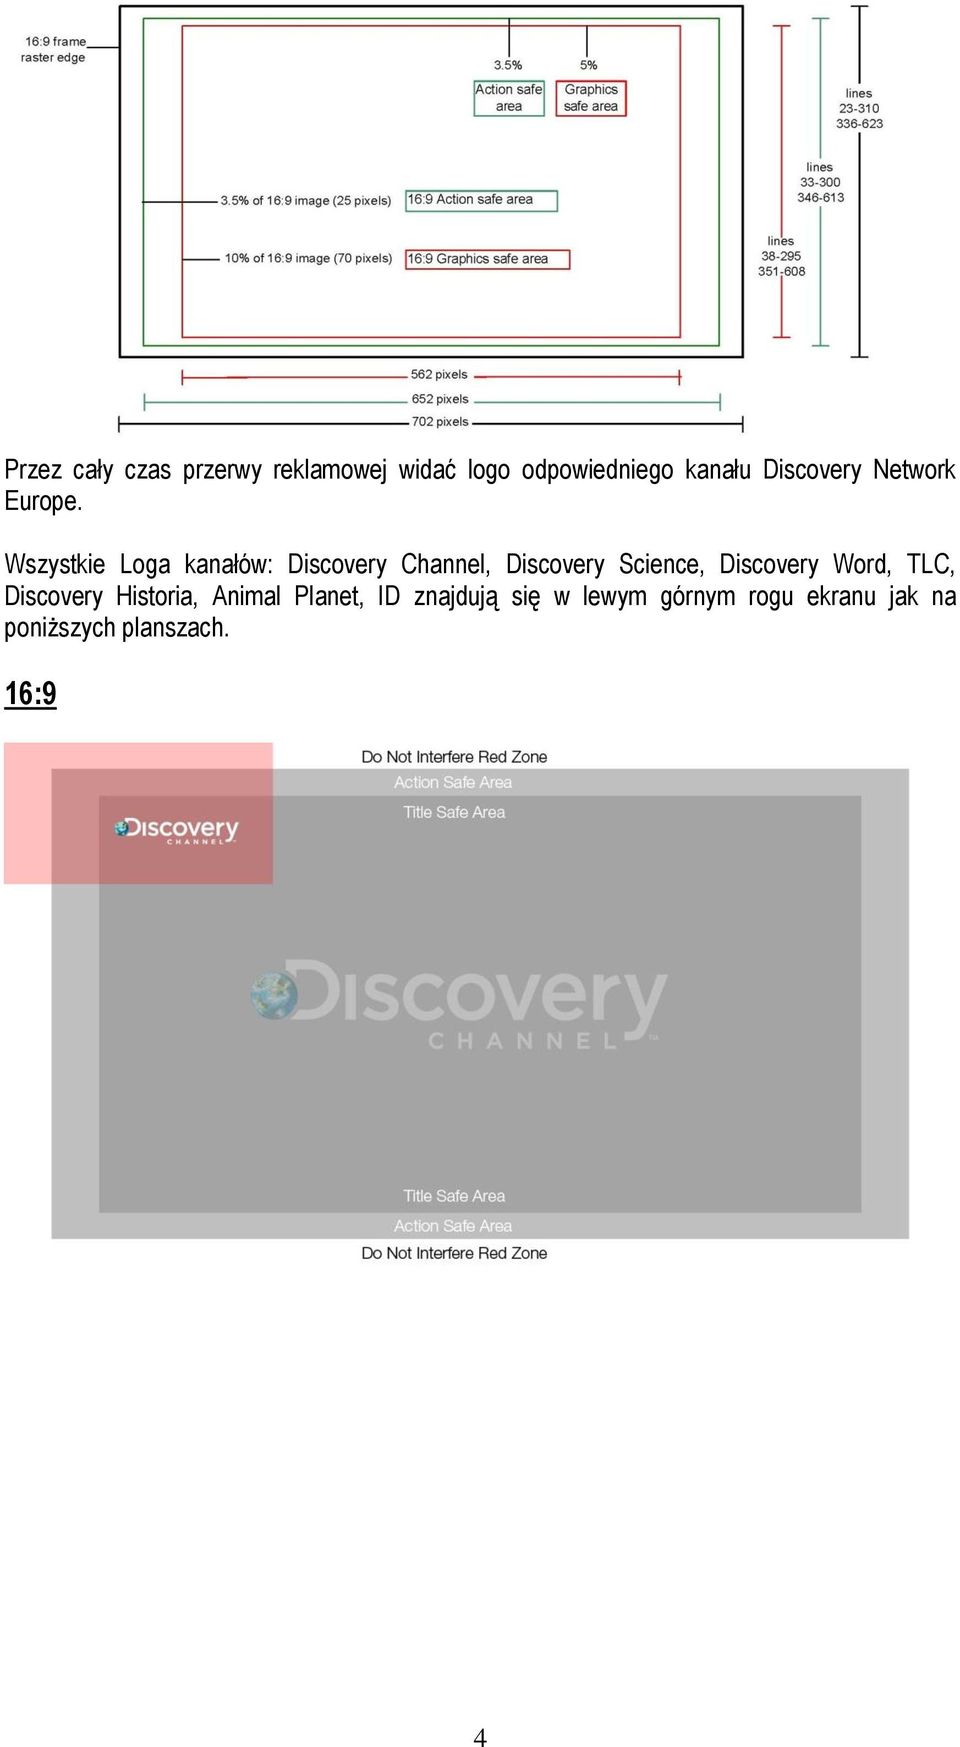 Wszystkie Loga kanałów: Discovery Channel, Discovery Science, Discovery